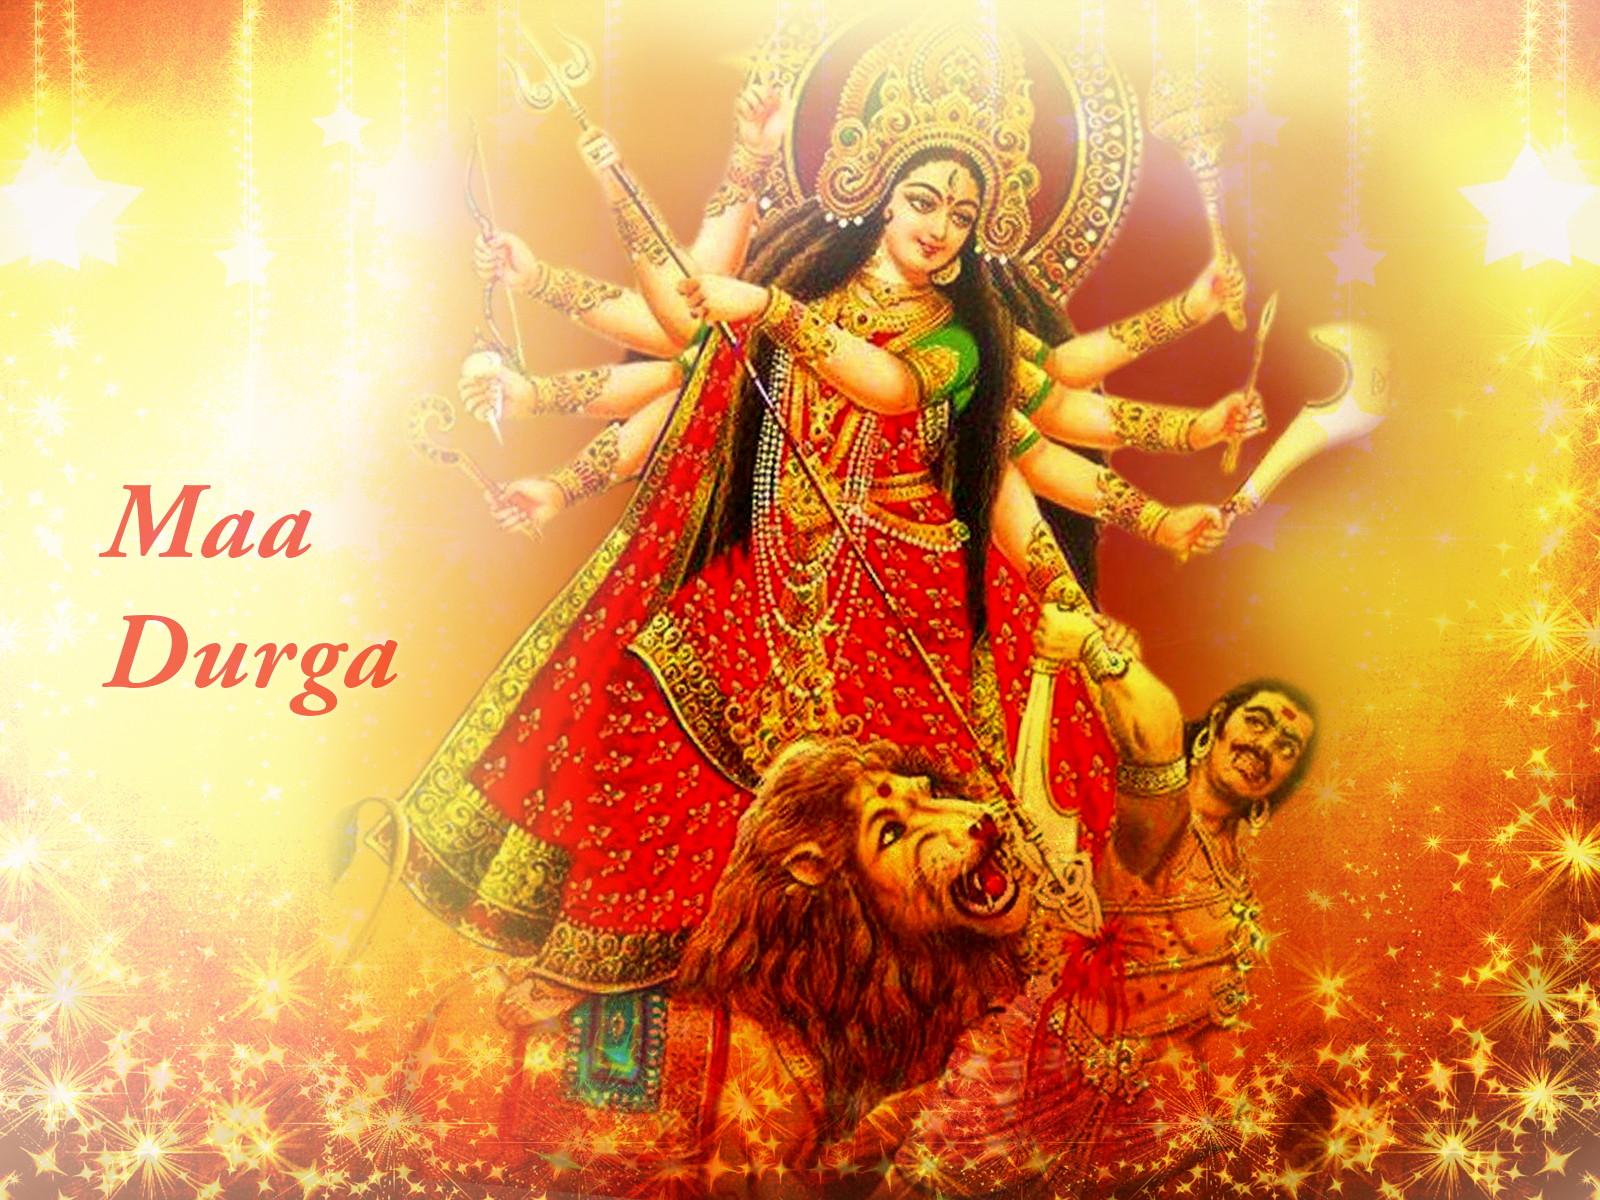 1600x1200 Maa Durga Image, Hình nền, Hình ảnh, Hình chụp, Bức ảnh - Devi